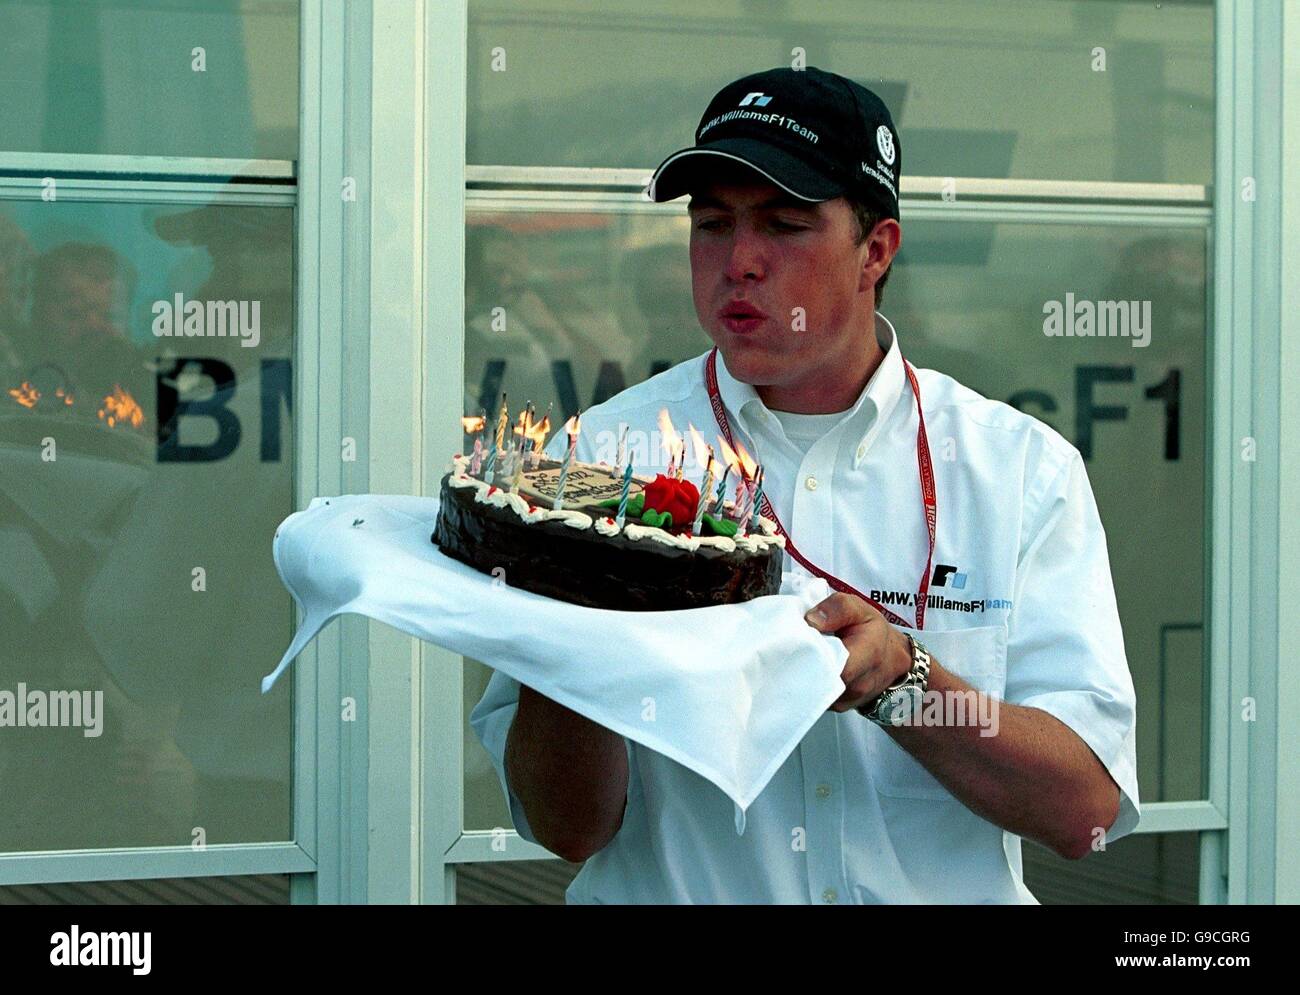 Formula uno Motor Racing - Gran Premio di Francia - Practice. Ralf Schumacher soffia le candele sulla sua torta di compleanno Foto Stock